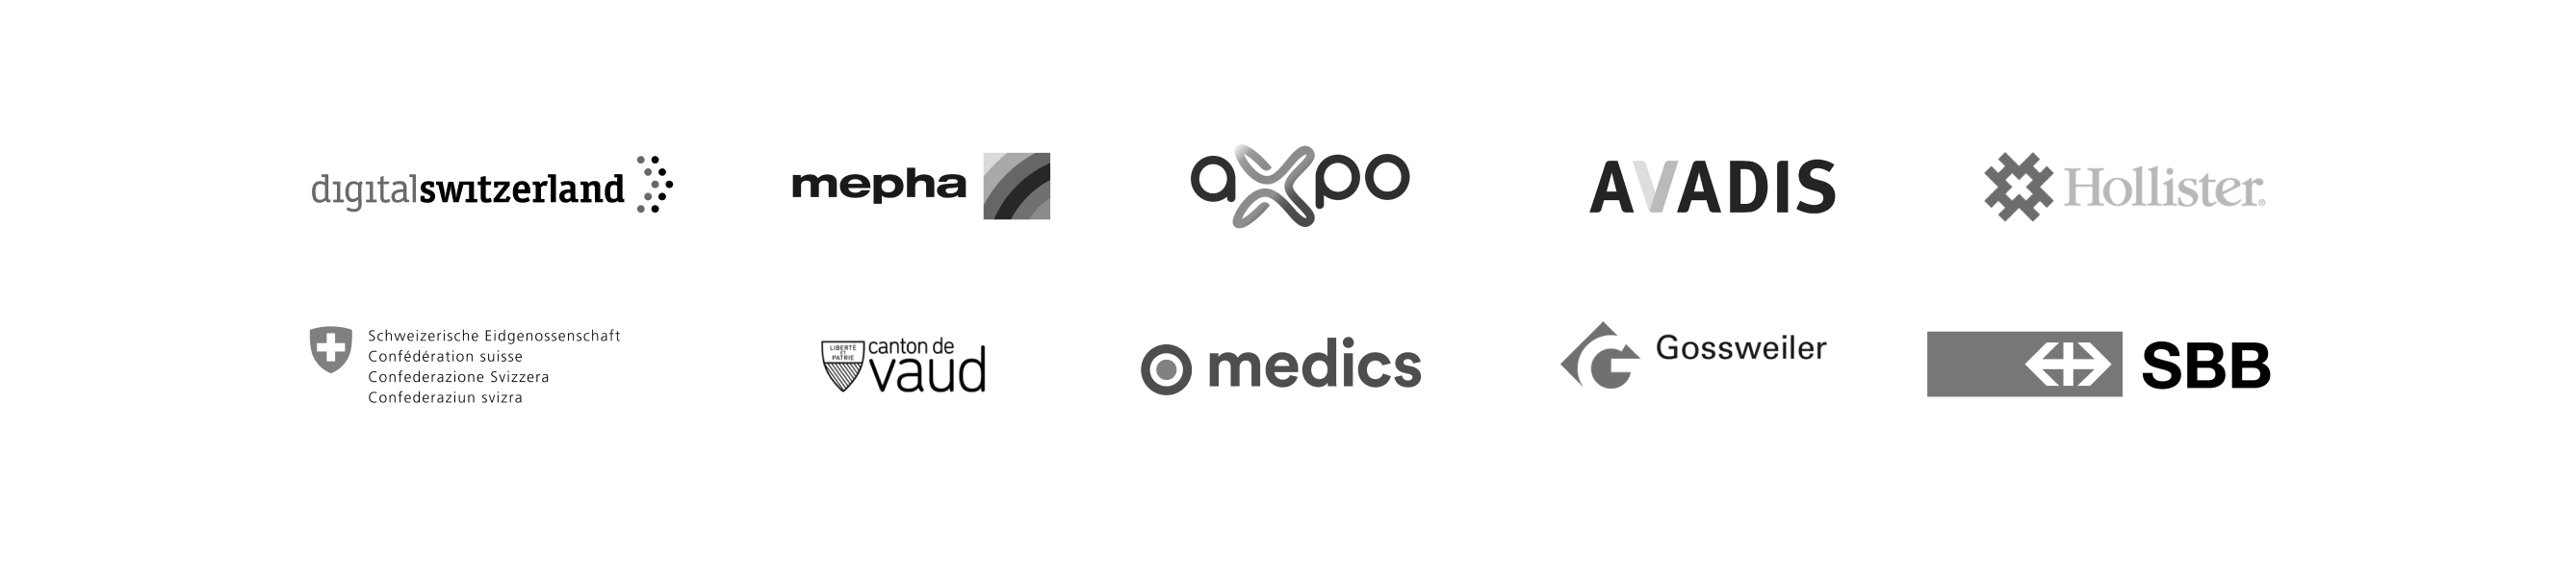 Logos of SBB, Mepha, Axpo, Digitalswitzerland, Canton Vaud, Schweizerische Eidgenossenschaft, Medics, Avadis, Hollister, Grossweiler